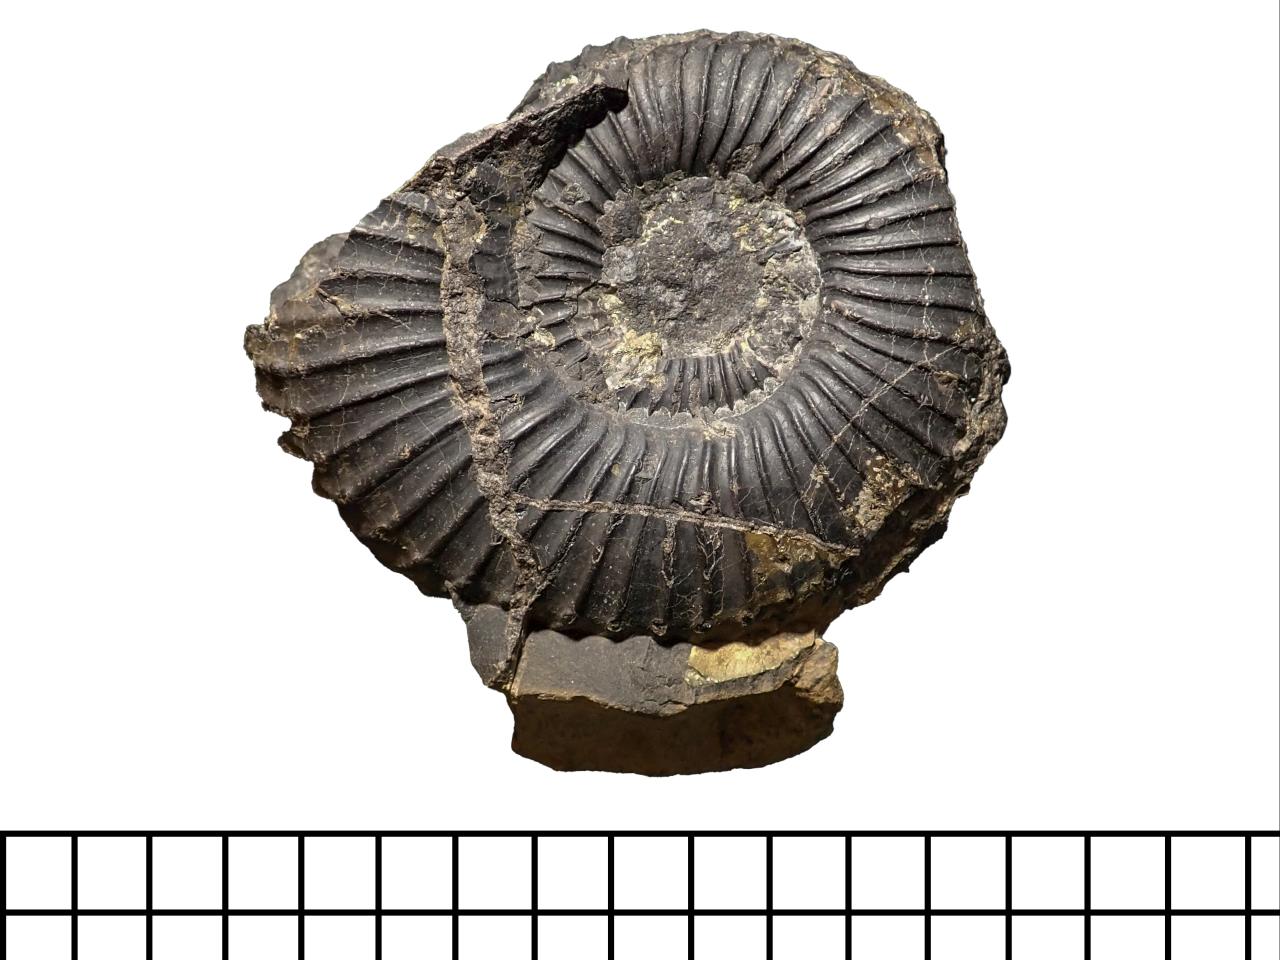 Ammonite cf. Favrella steinmanni